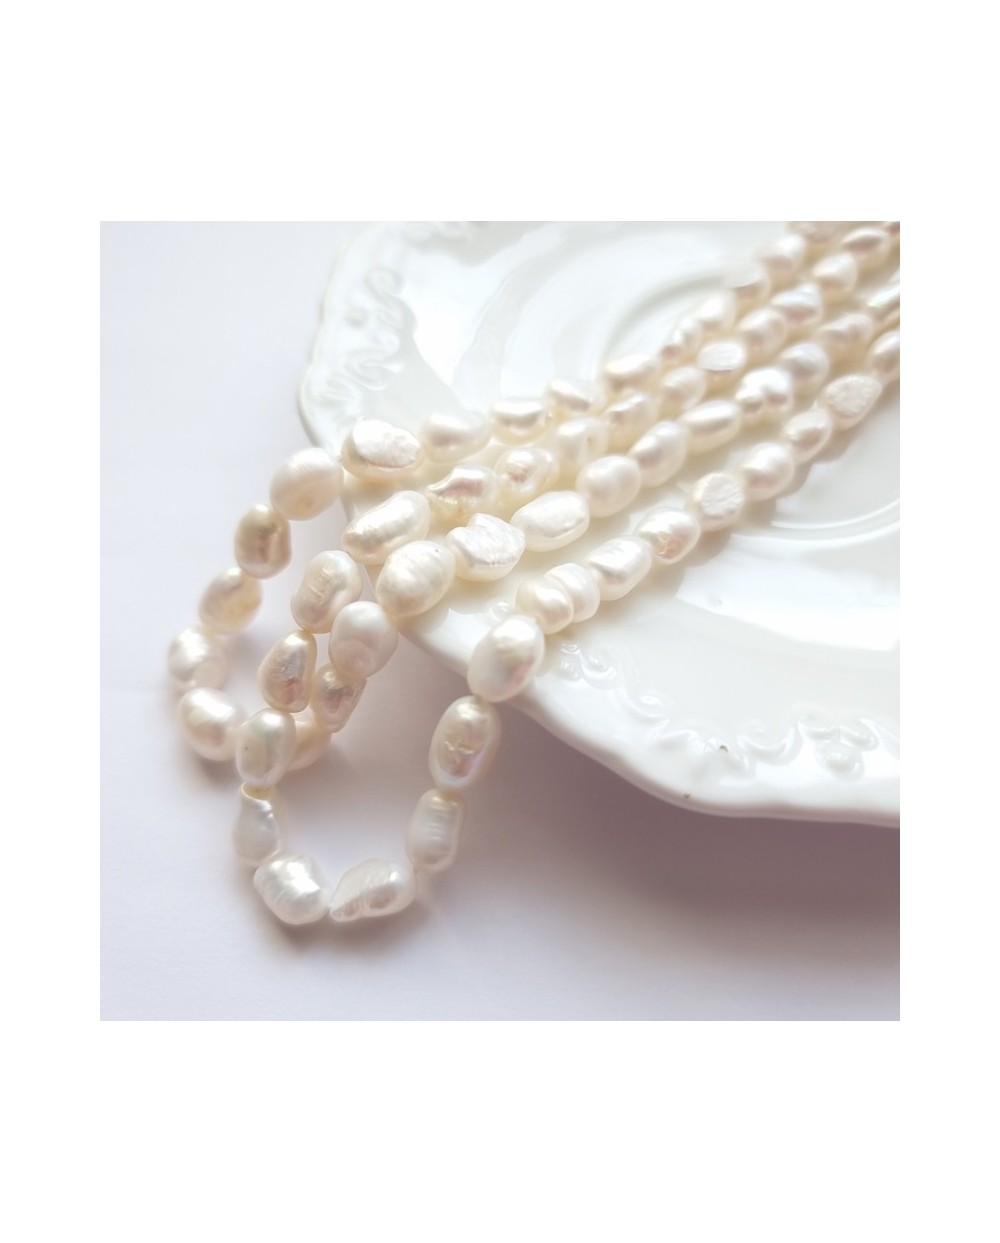 Perlai gėlavandeniai baltos sp., netaisyklingos formos 5-7x9-10 mm, 1 vnt.